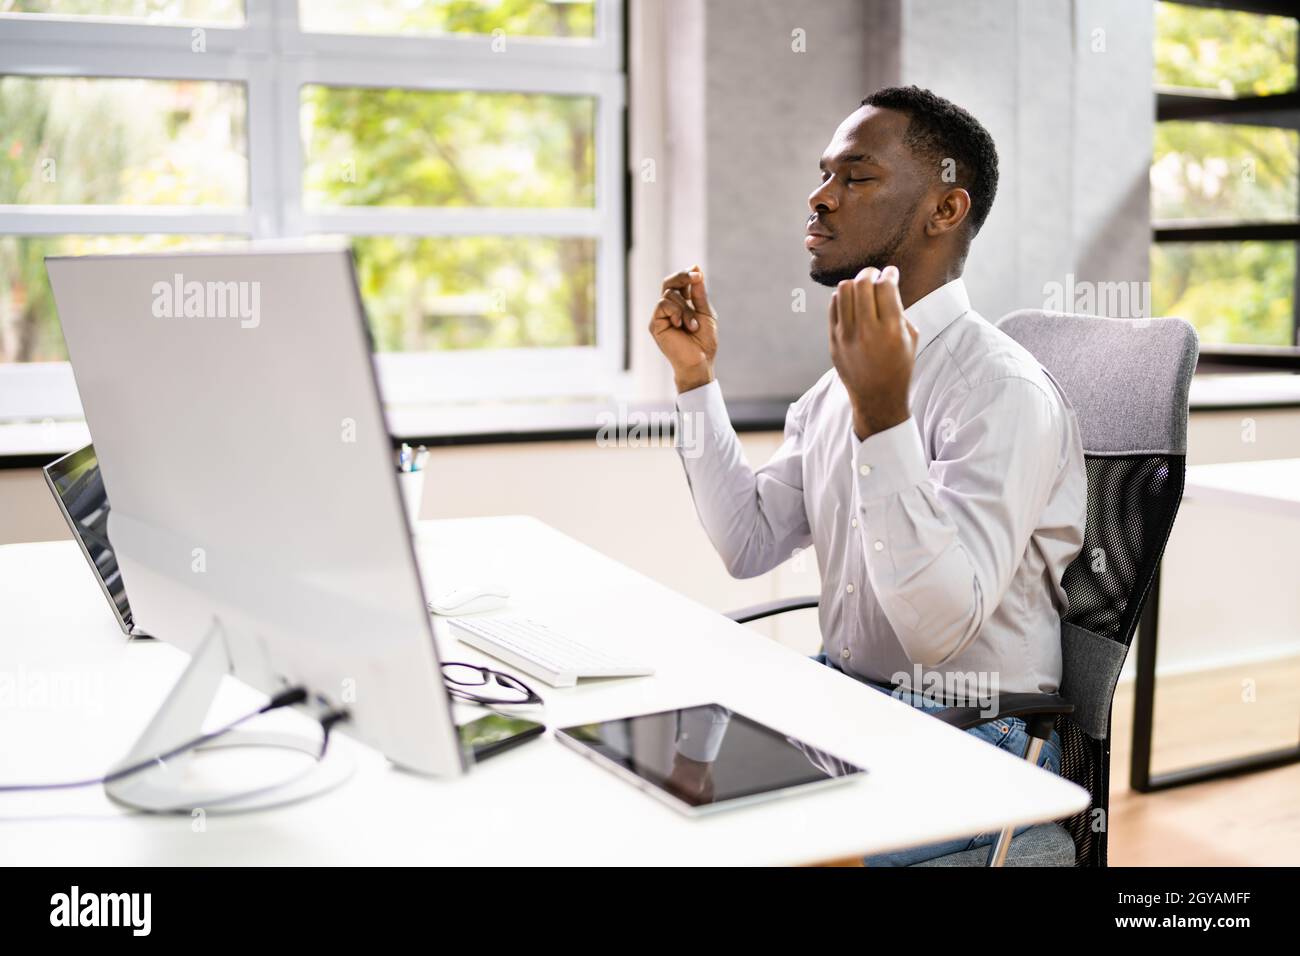 Méditation d'homme afro-américain derrière l'ordinateur au bureau Banque D'Images